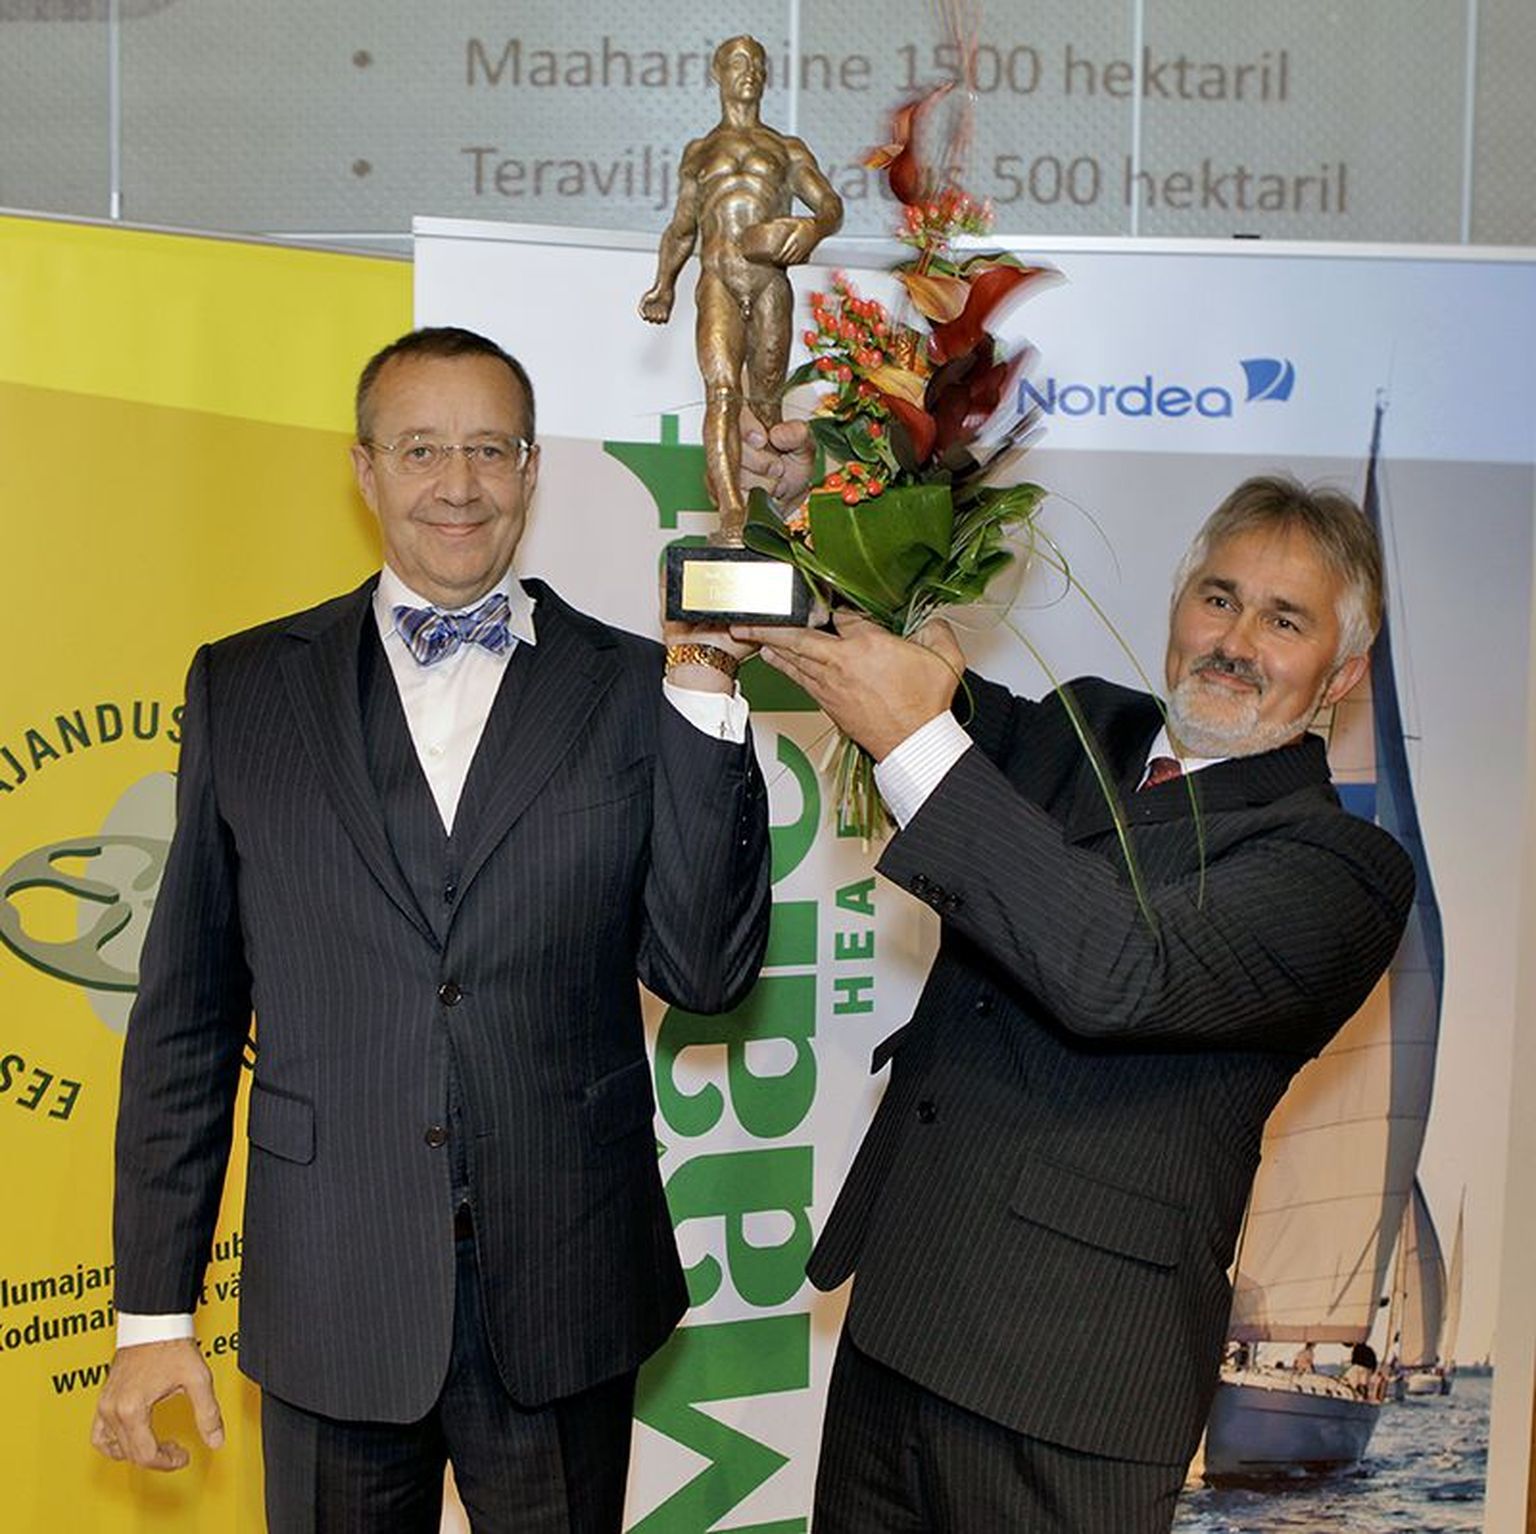 Riigipea osales aunimetuse aasta põllumees 2013 auhinna üleandmisel.